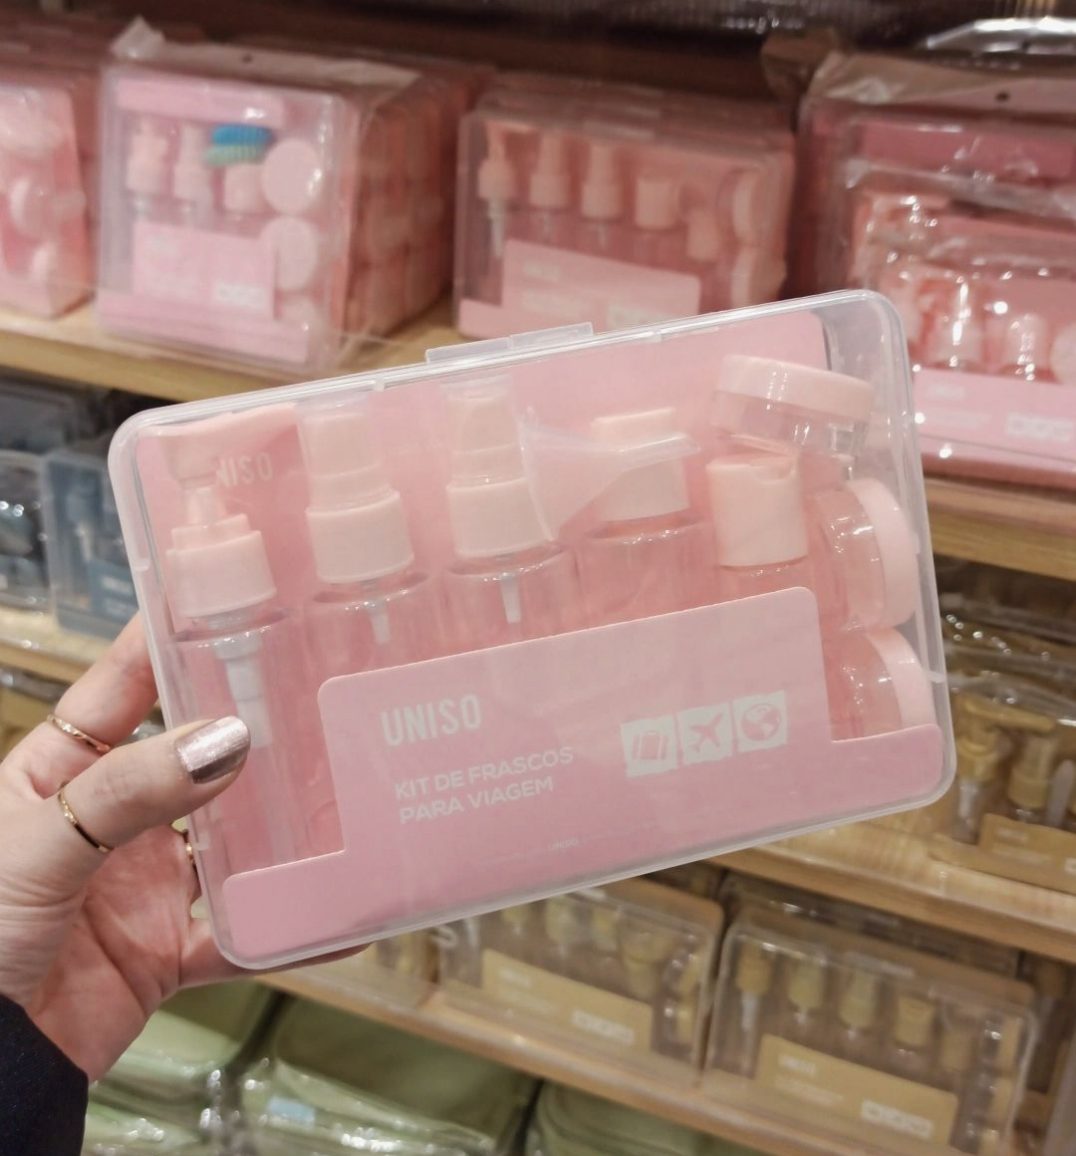 kit-de-frascos-de-viagem-rosa-da-uniso-brasil-9-itens